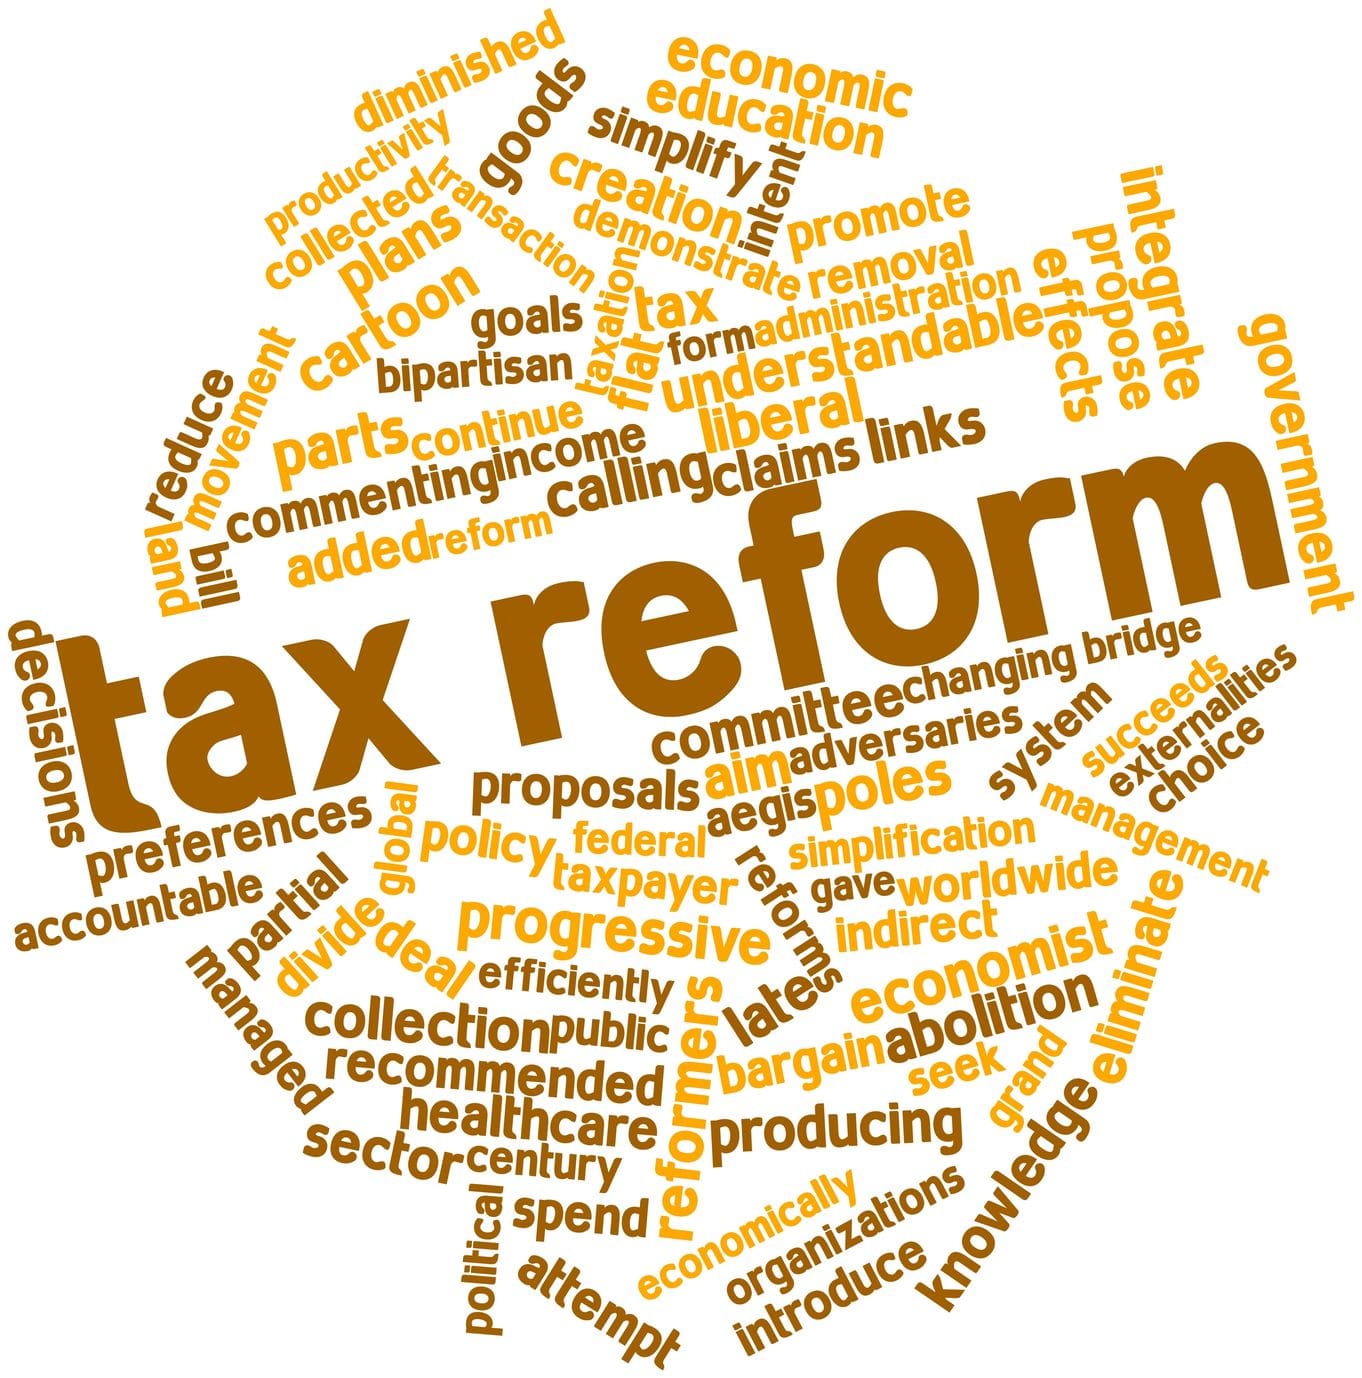 Congress Begins Work On Tax Reform